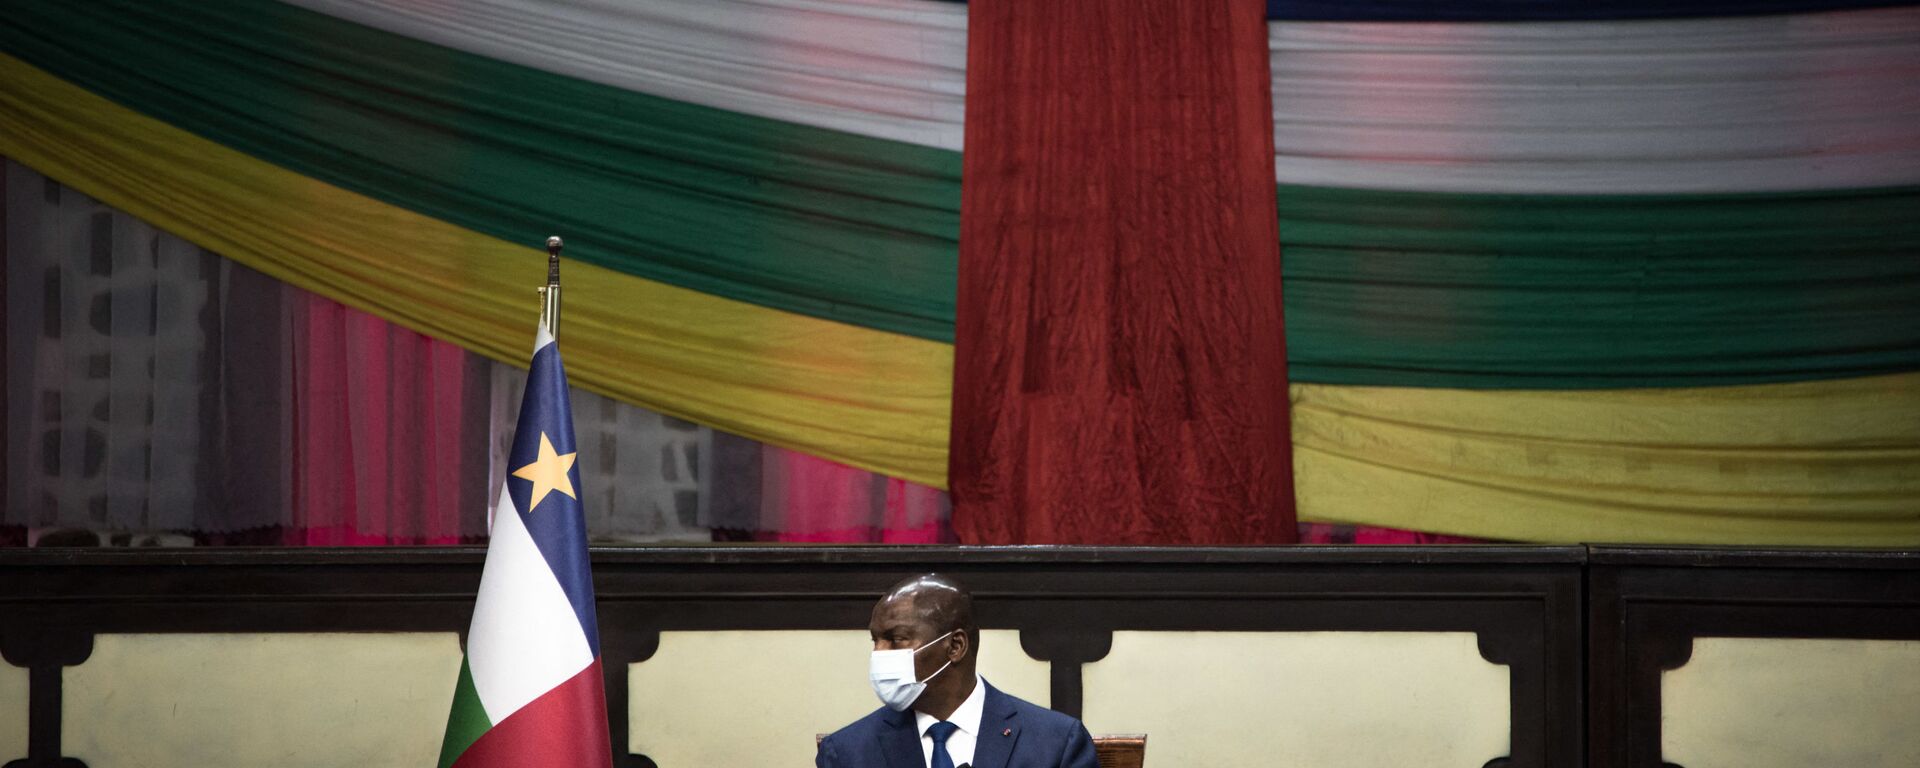 Faustin-Archange Touadéra, président centrafricain à Bangui, février 2021 - Sputnik Afrique, 1920, 25.02.2021